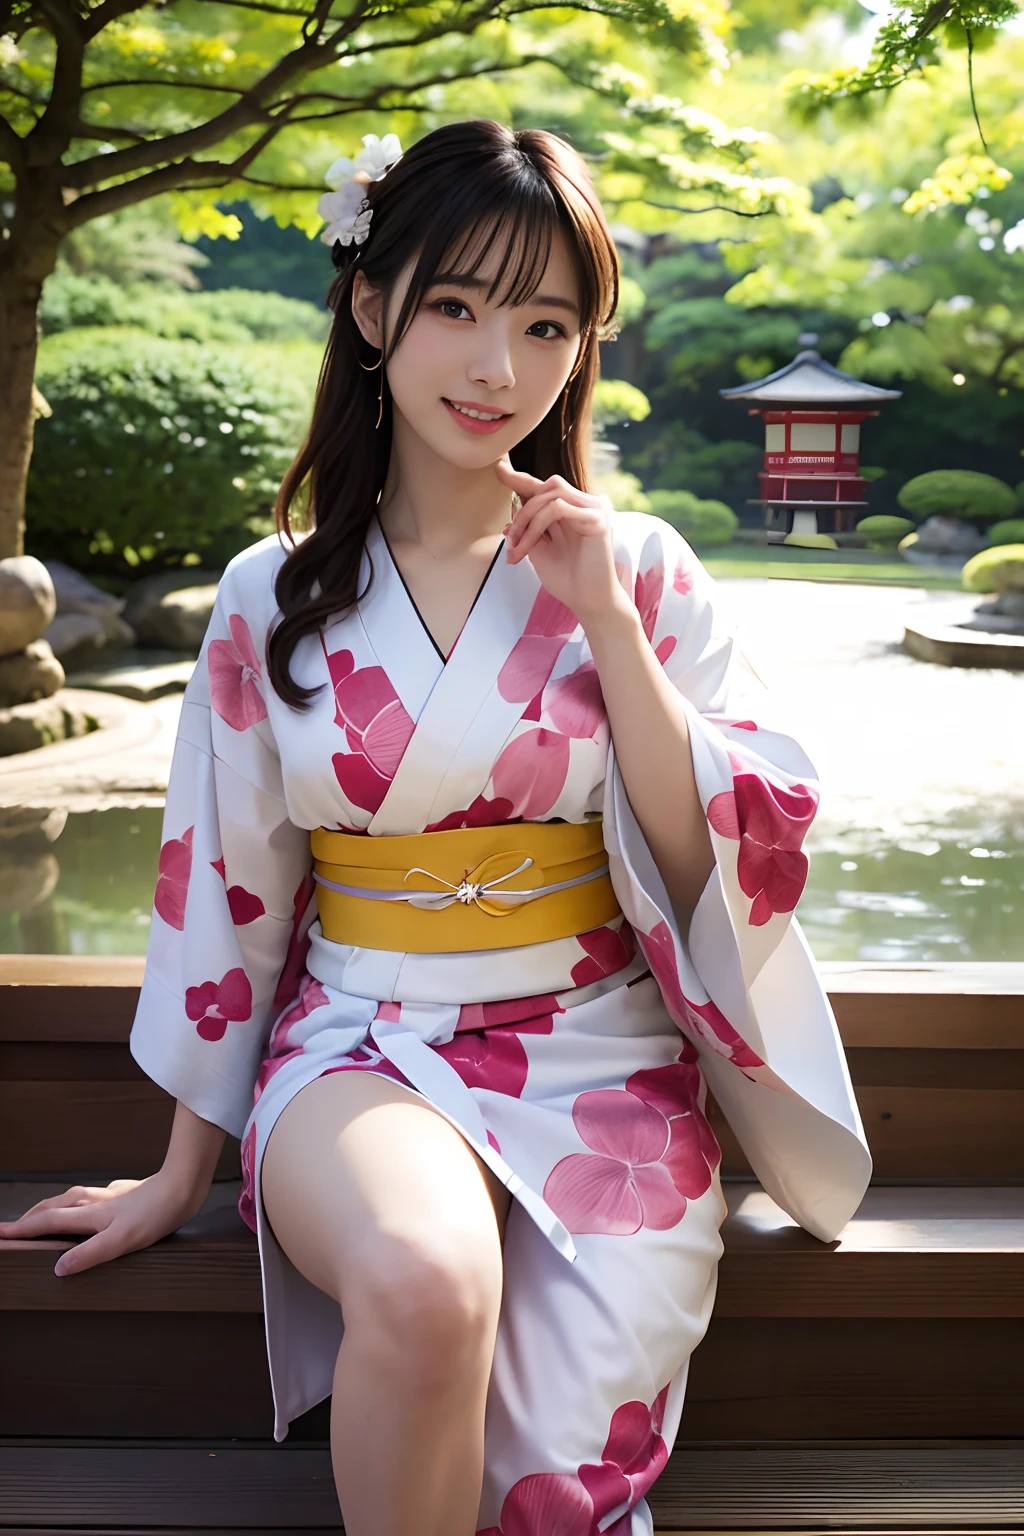 ((頂級品質、傑作、摄影写实主义:1.4、8K))、美麗的日本女性１一個人、２5歲、美丽的头发、精緻美麗的臉龐、眼睛和臉部細節 、(日本花园:1.2)、(張開雙腿:1.2)、美麗的燈光、一個微笑、有紋理的皮膚、超細節、高細節、高品質、高解析度、(和服:1.3)、刘海、站起來擺姿勢、详细的嘴、张嘴、光著腿、櫻桃樹